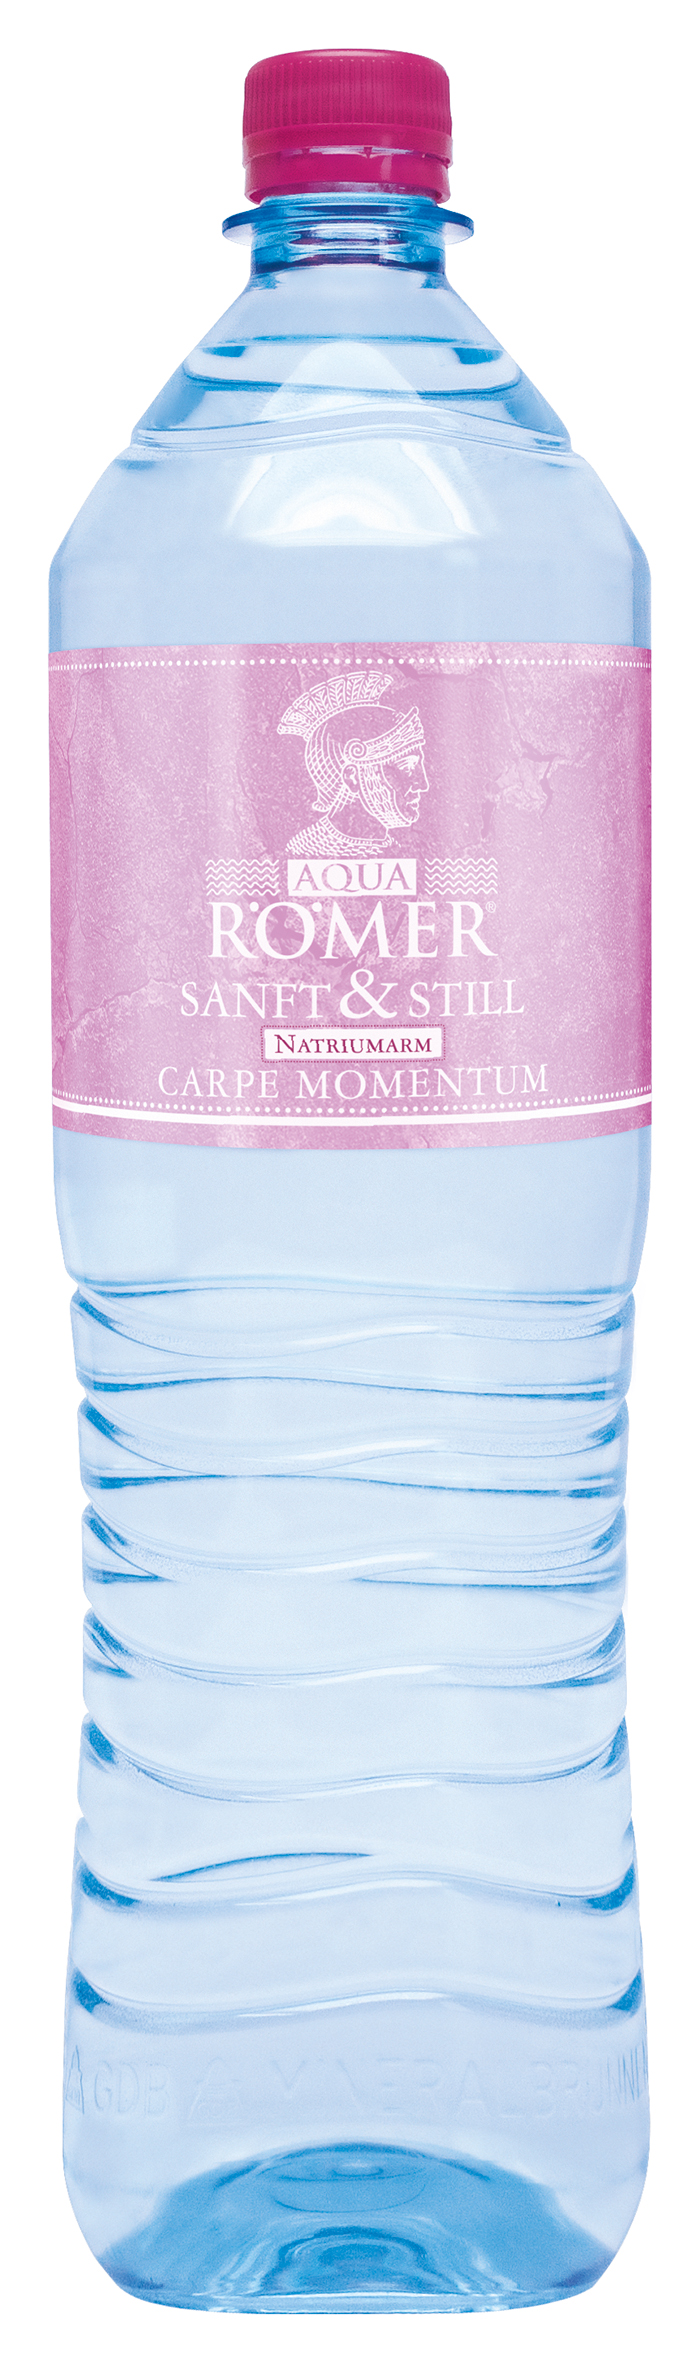 Aqua Römer Sanft & Still 6x1,5 l